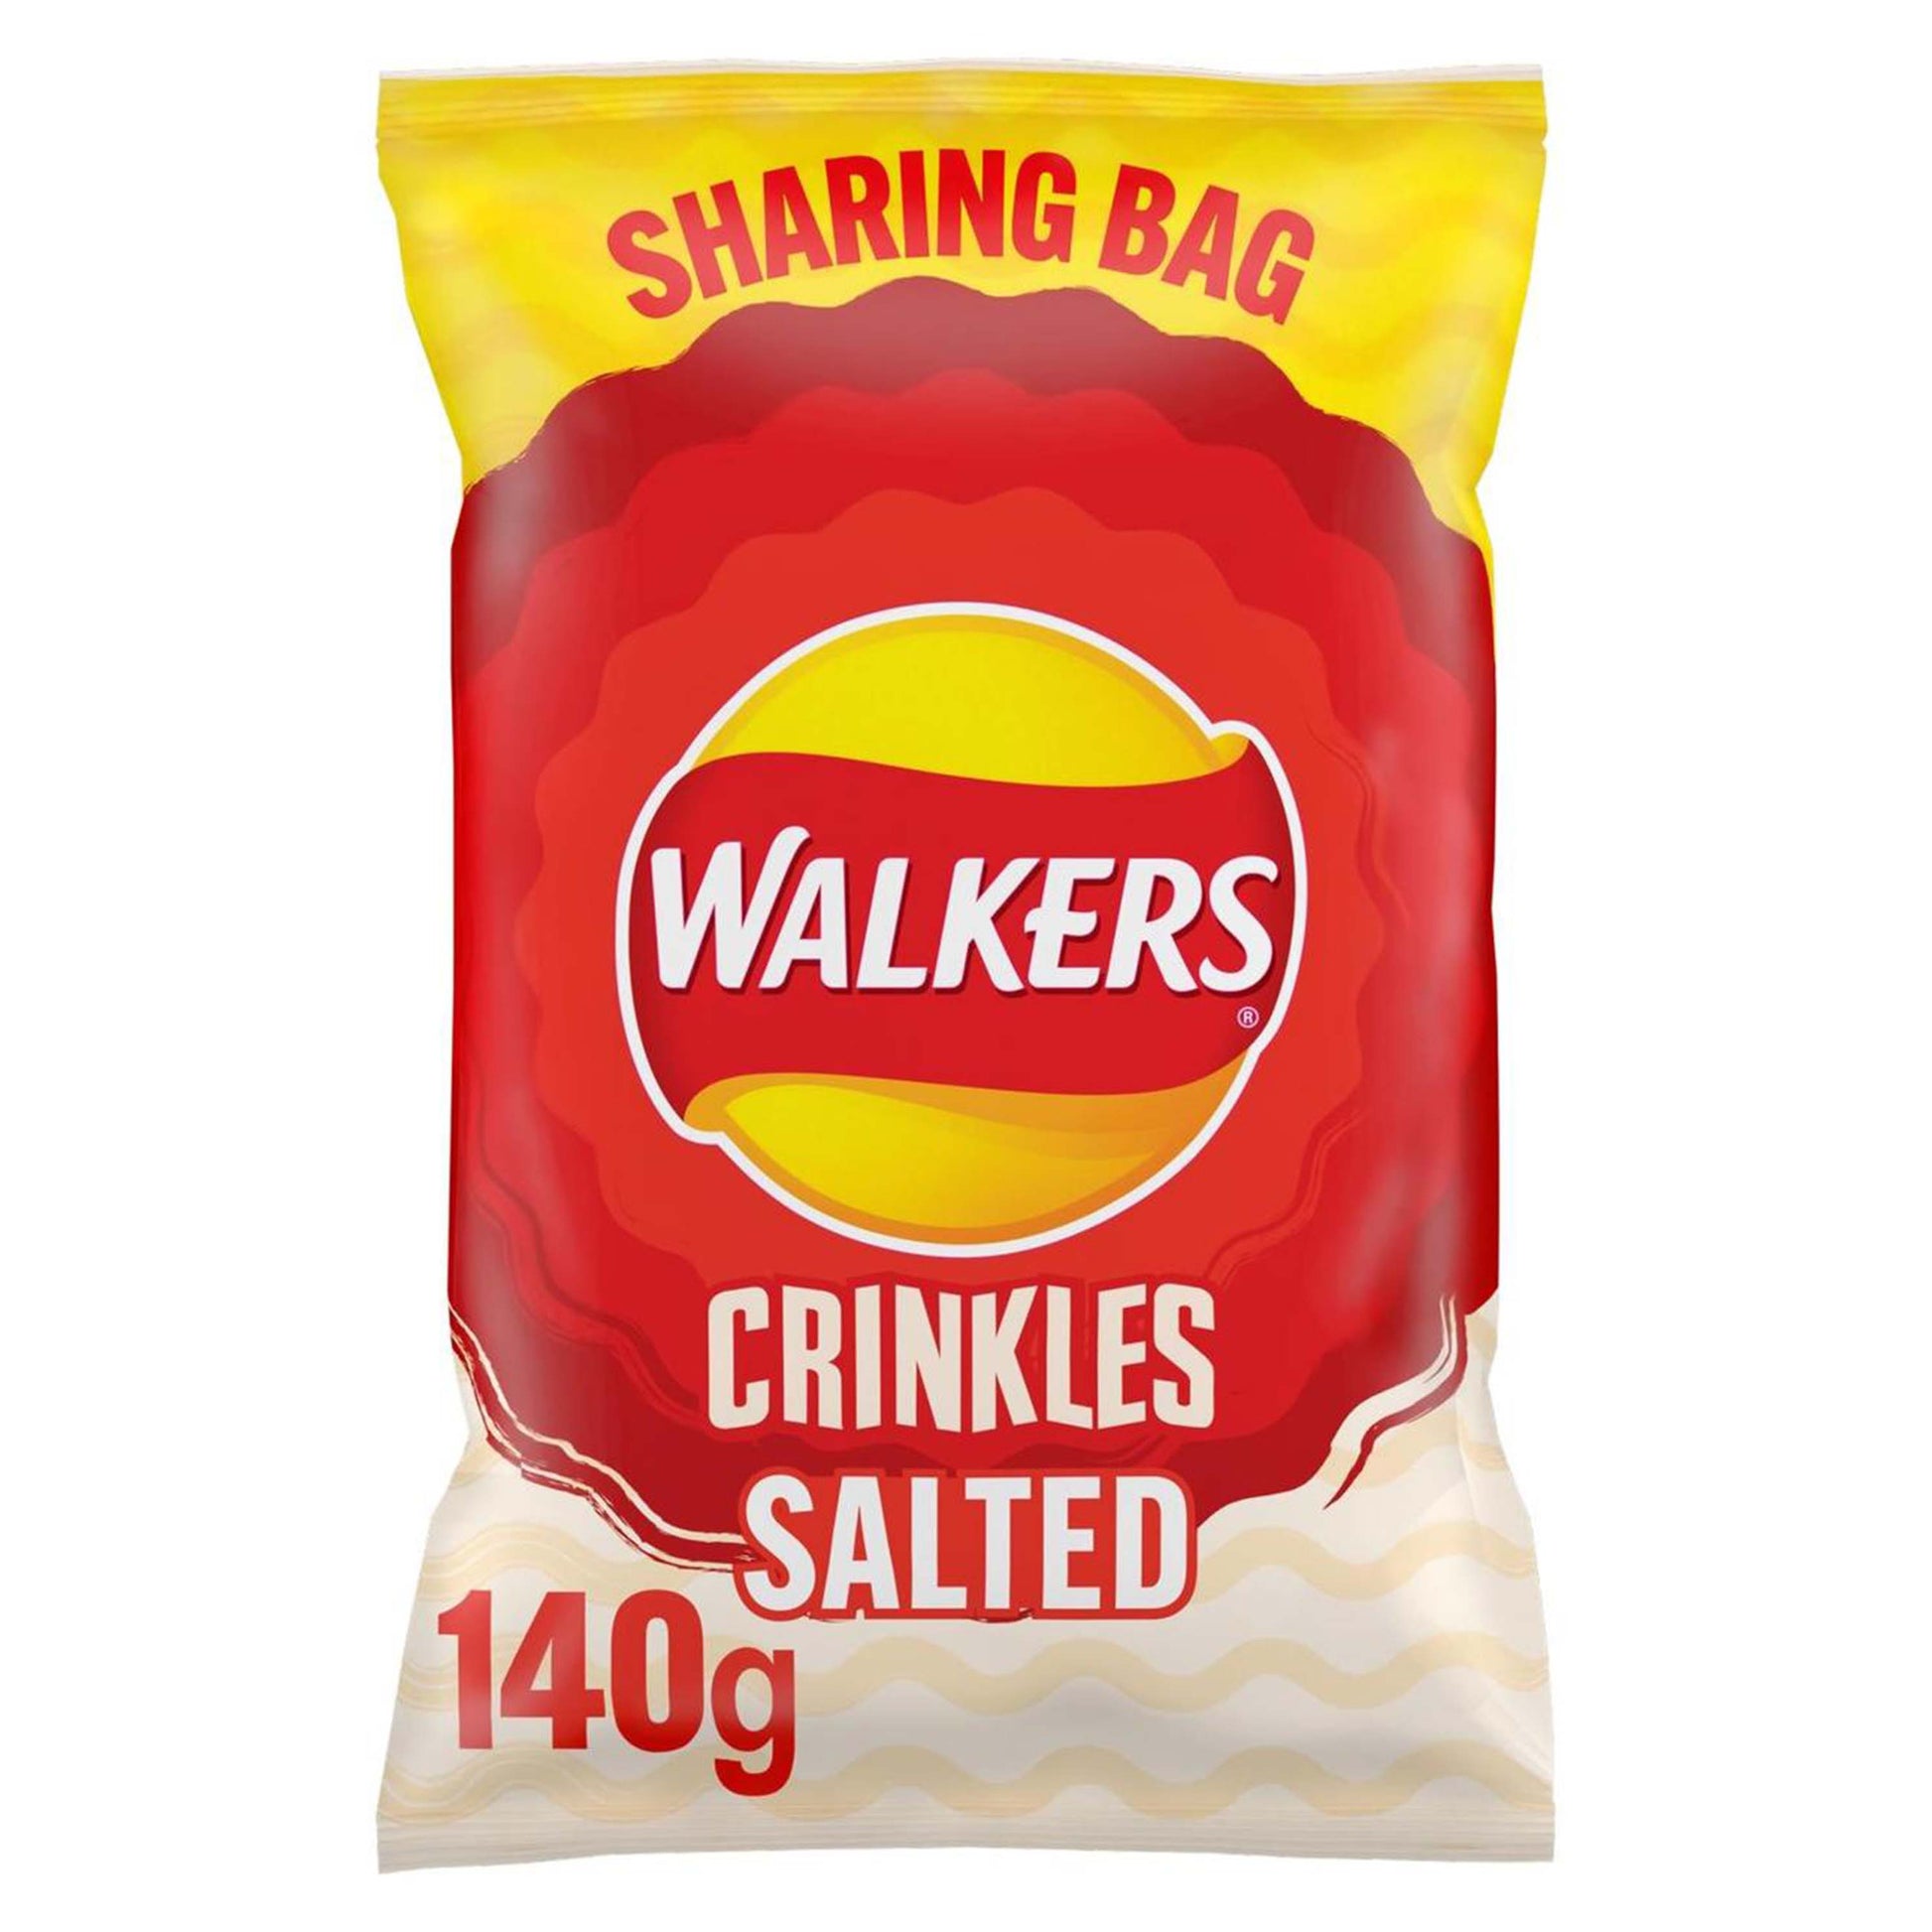 Walkers Crinkles Simply Salted Sharing Bag Crisps - 140g - Walkers Snacks